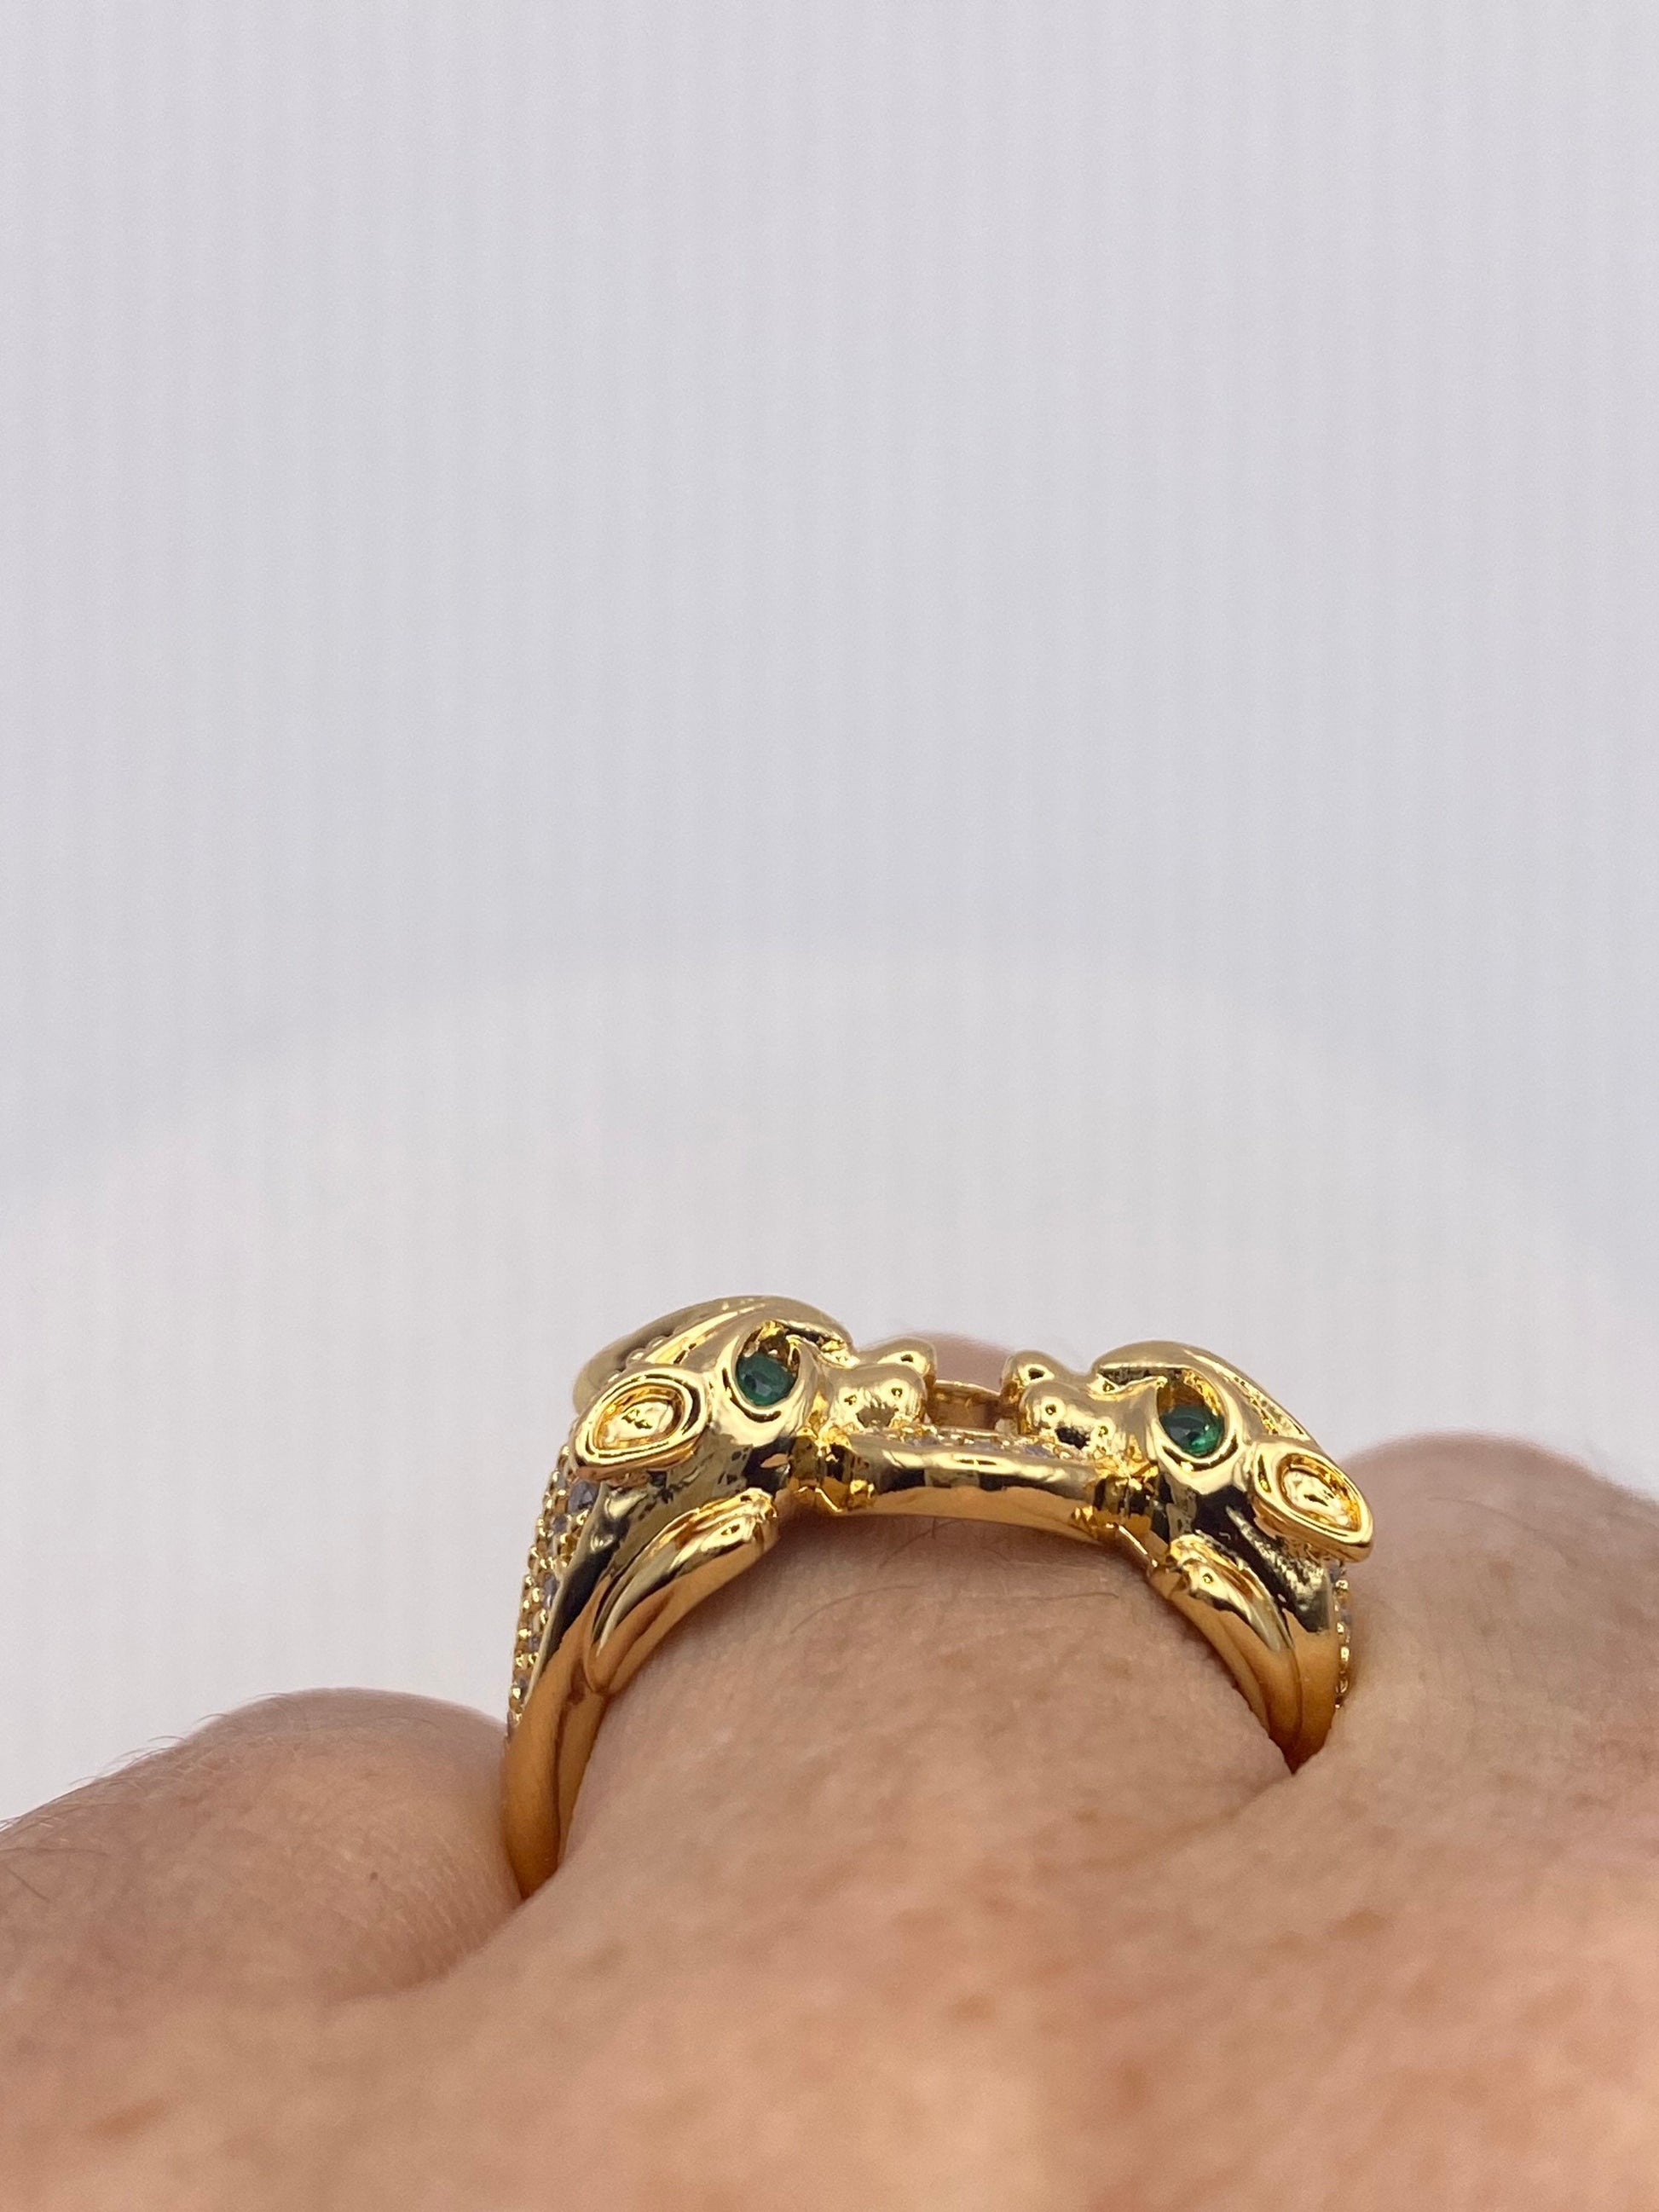 Vintage Cat Cougar Ring Gold filled Deco Cocktail Adjustable